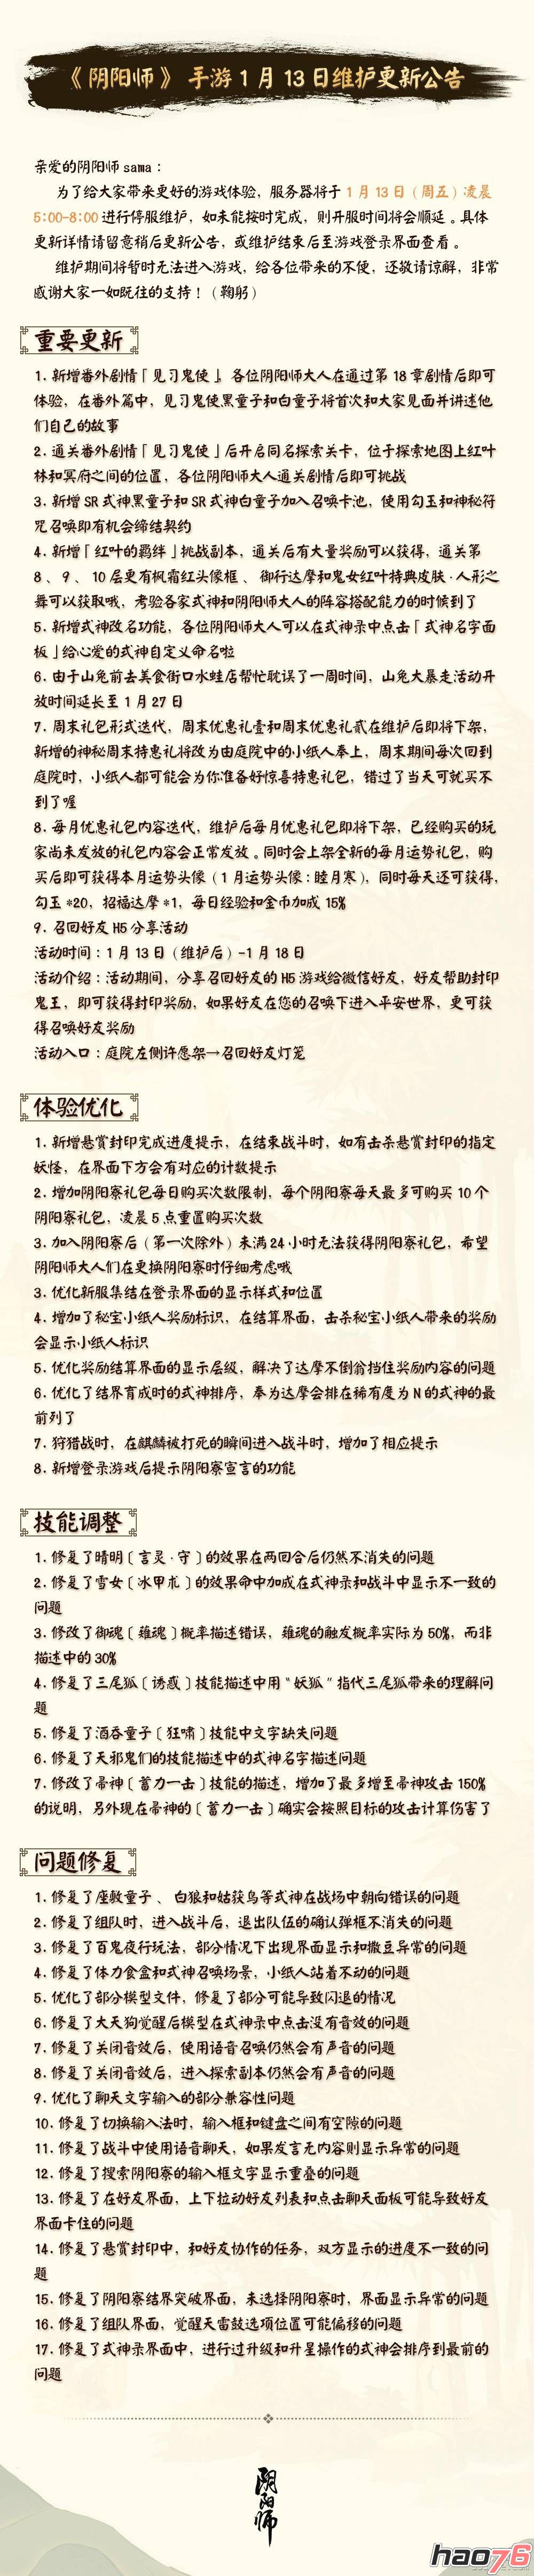 阴阳师1月13日更新了什么   阴阳师新番外“见习鬼使”上线